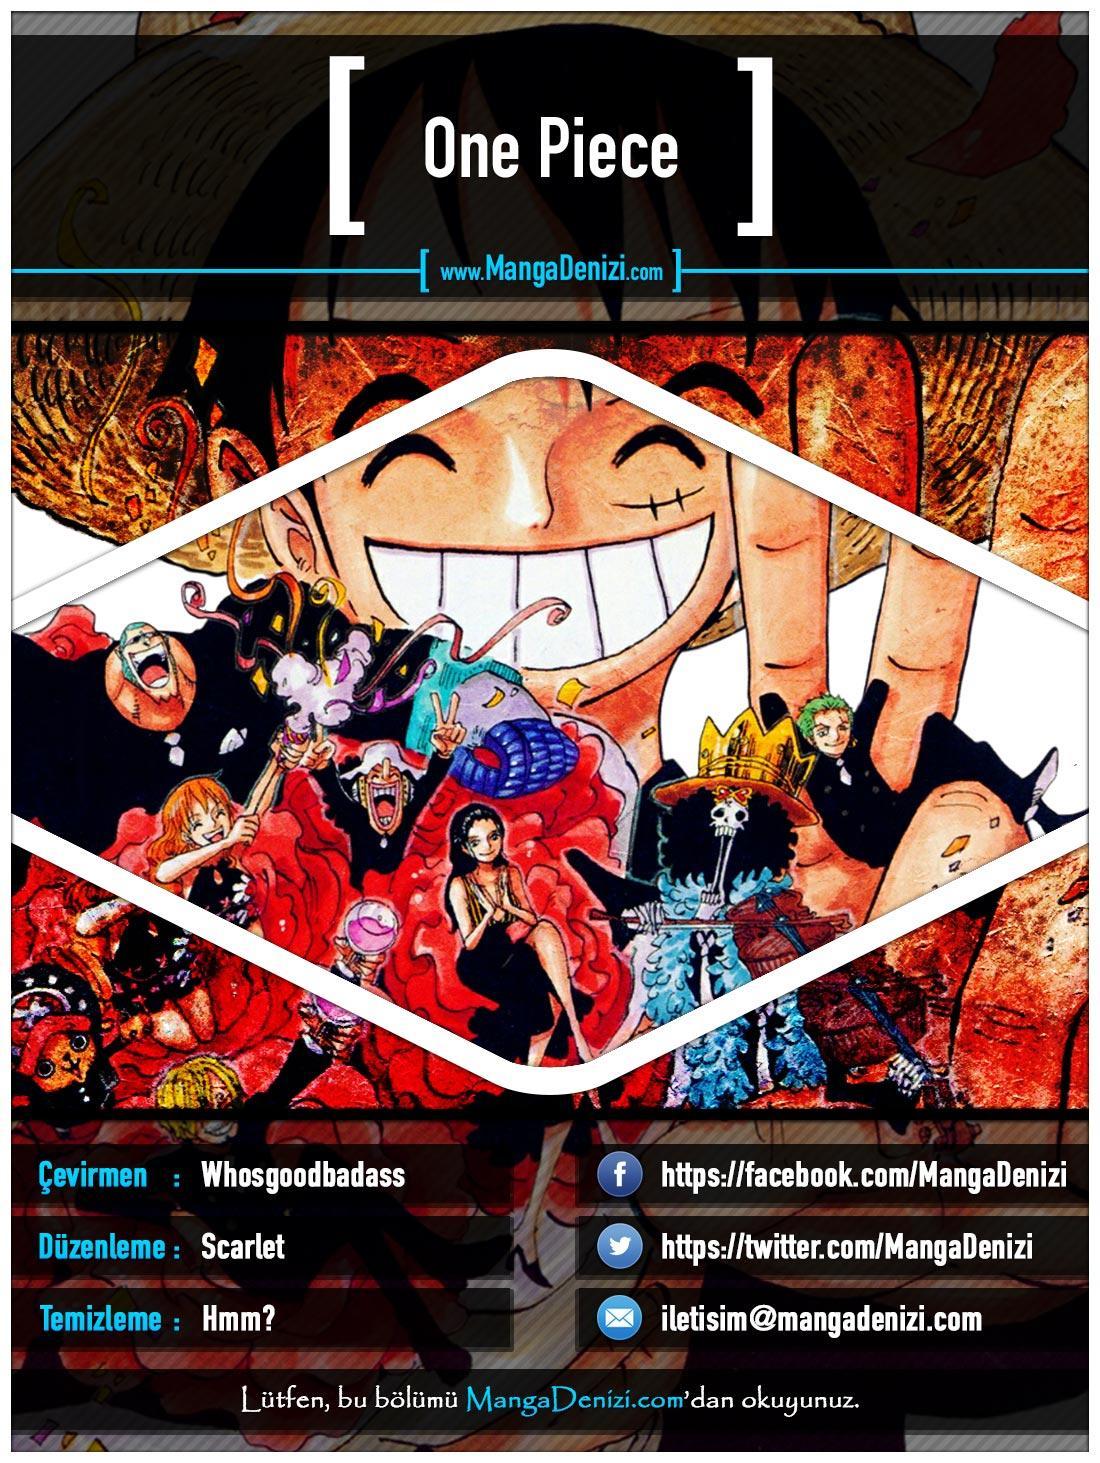 One Piece [Renkli] mangasının 0654 bölümünün 1. sayfasını okuyorsunuz.